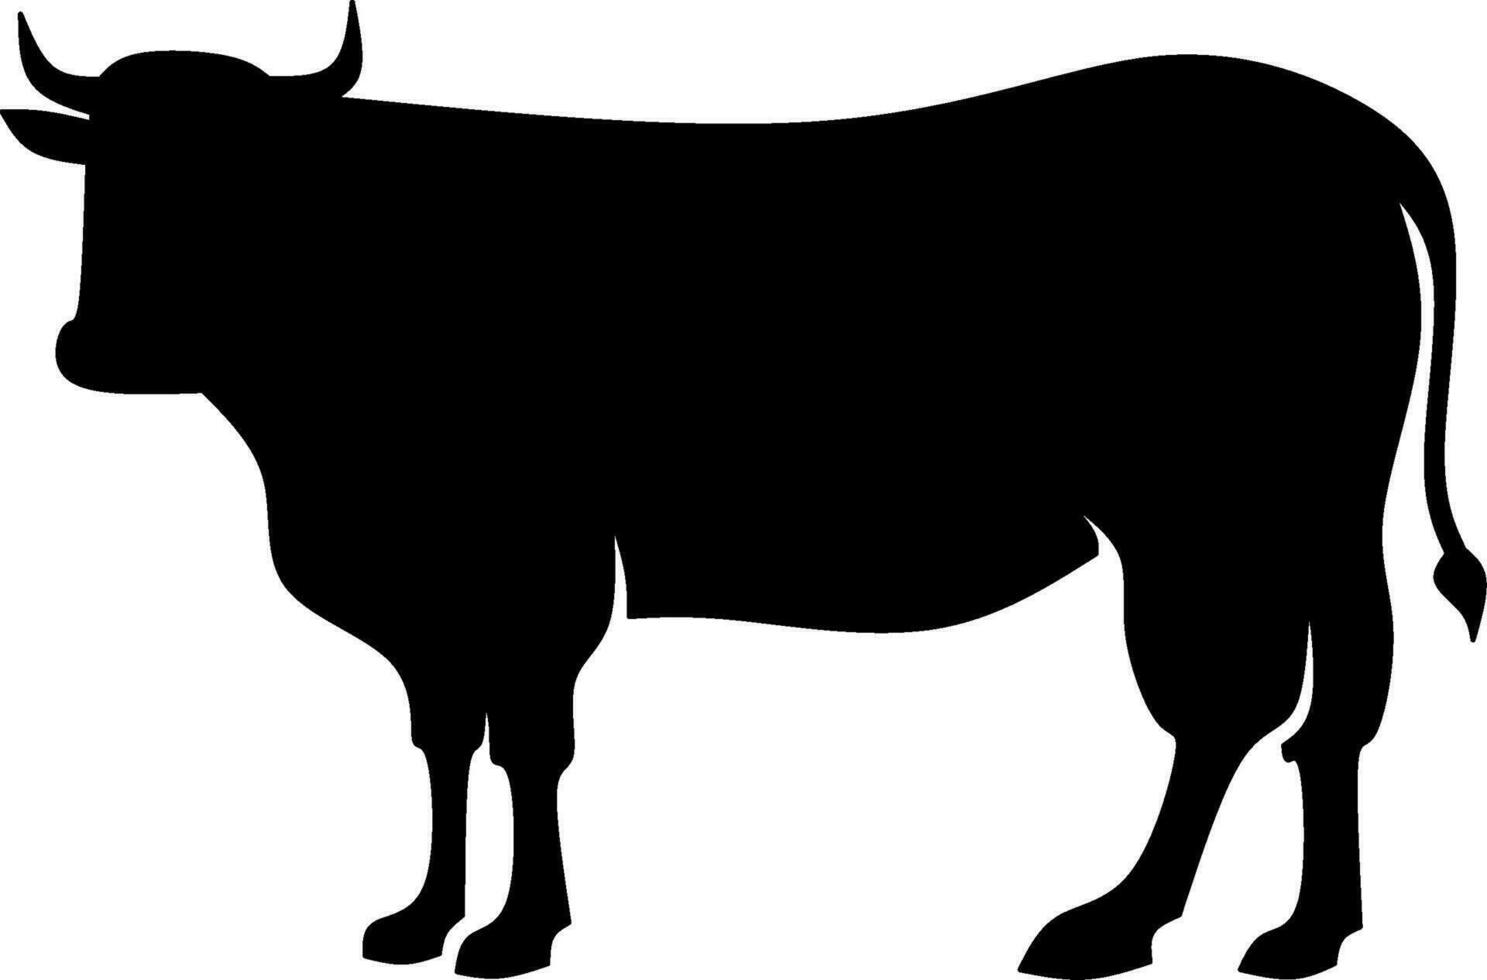 das Vieh Symbol Vektor Illustration. Silhouette Kuh Symbol zum Vieh, Essen, Tier und eid al adha Fall. Grafik Ressource zum Qurban Design im Islam und Muslim Kultur